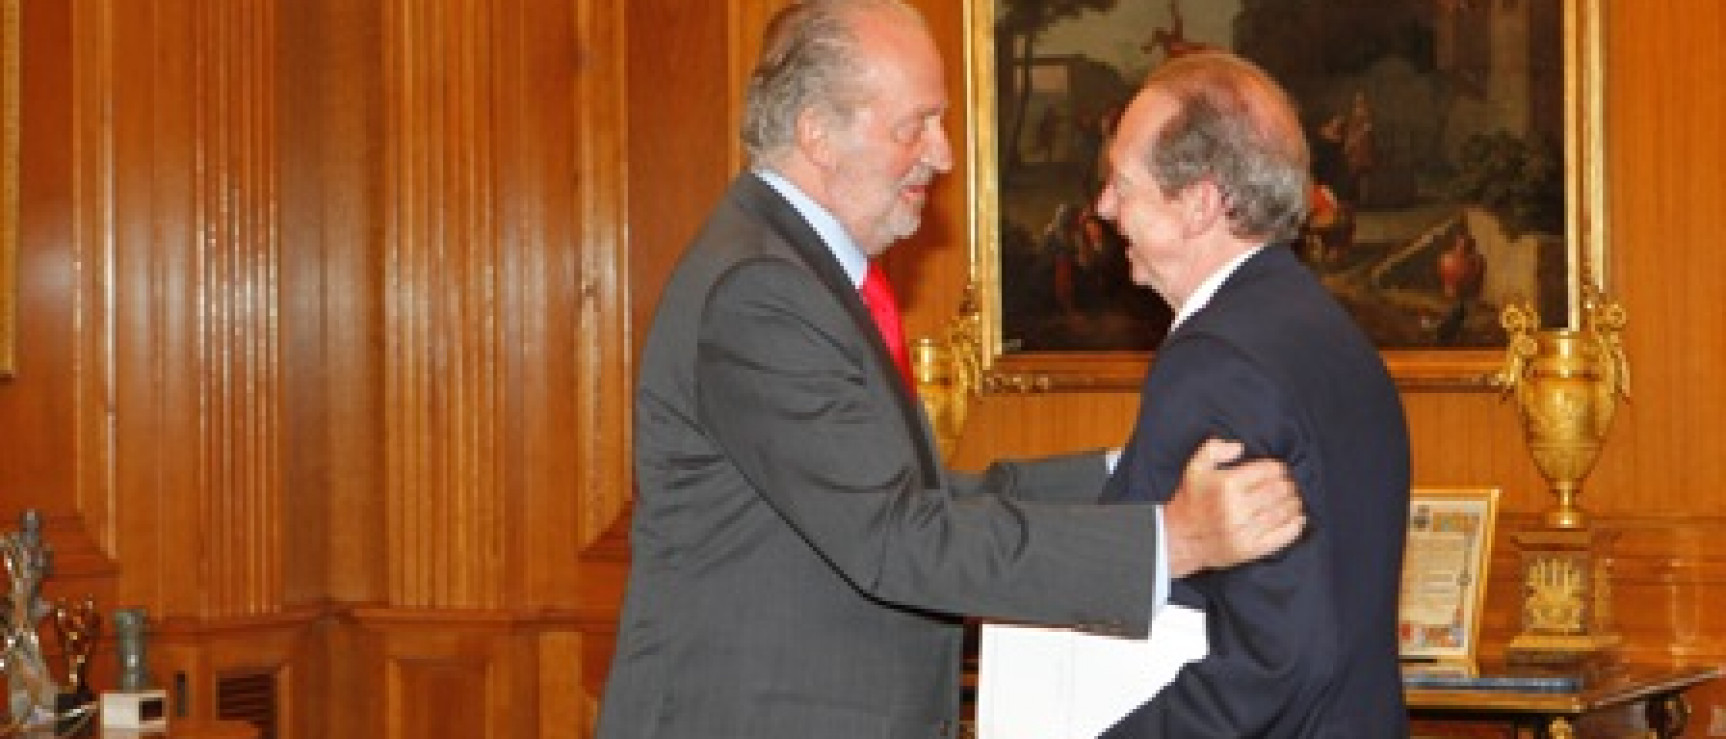 Reunión anual del patronato de la Fundación pro Real Academia Española, presidida por el rey, 2011.